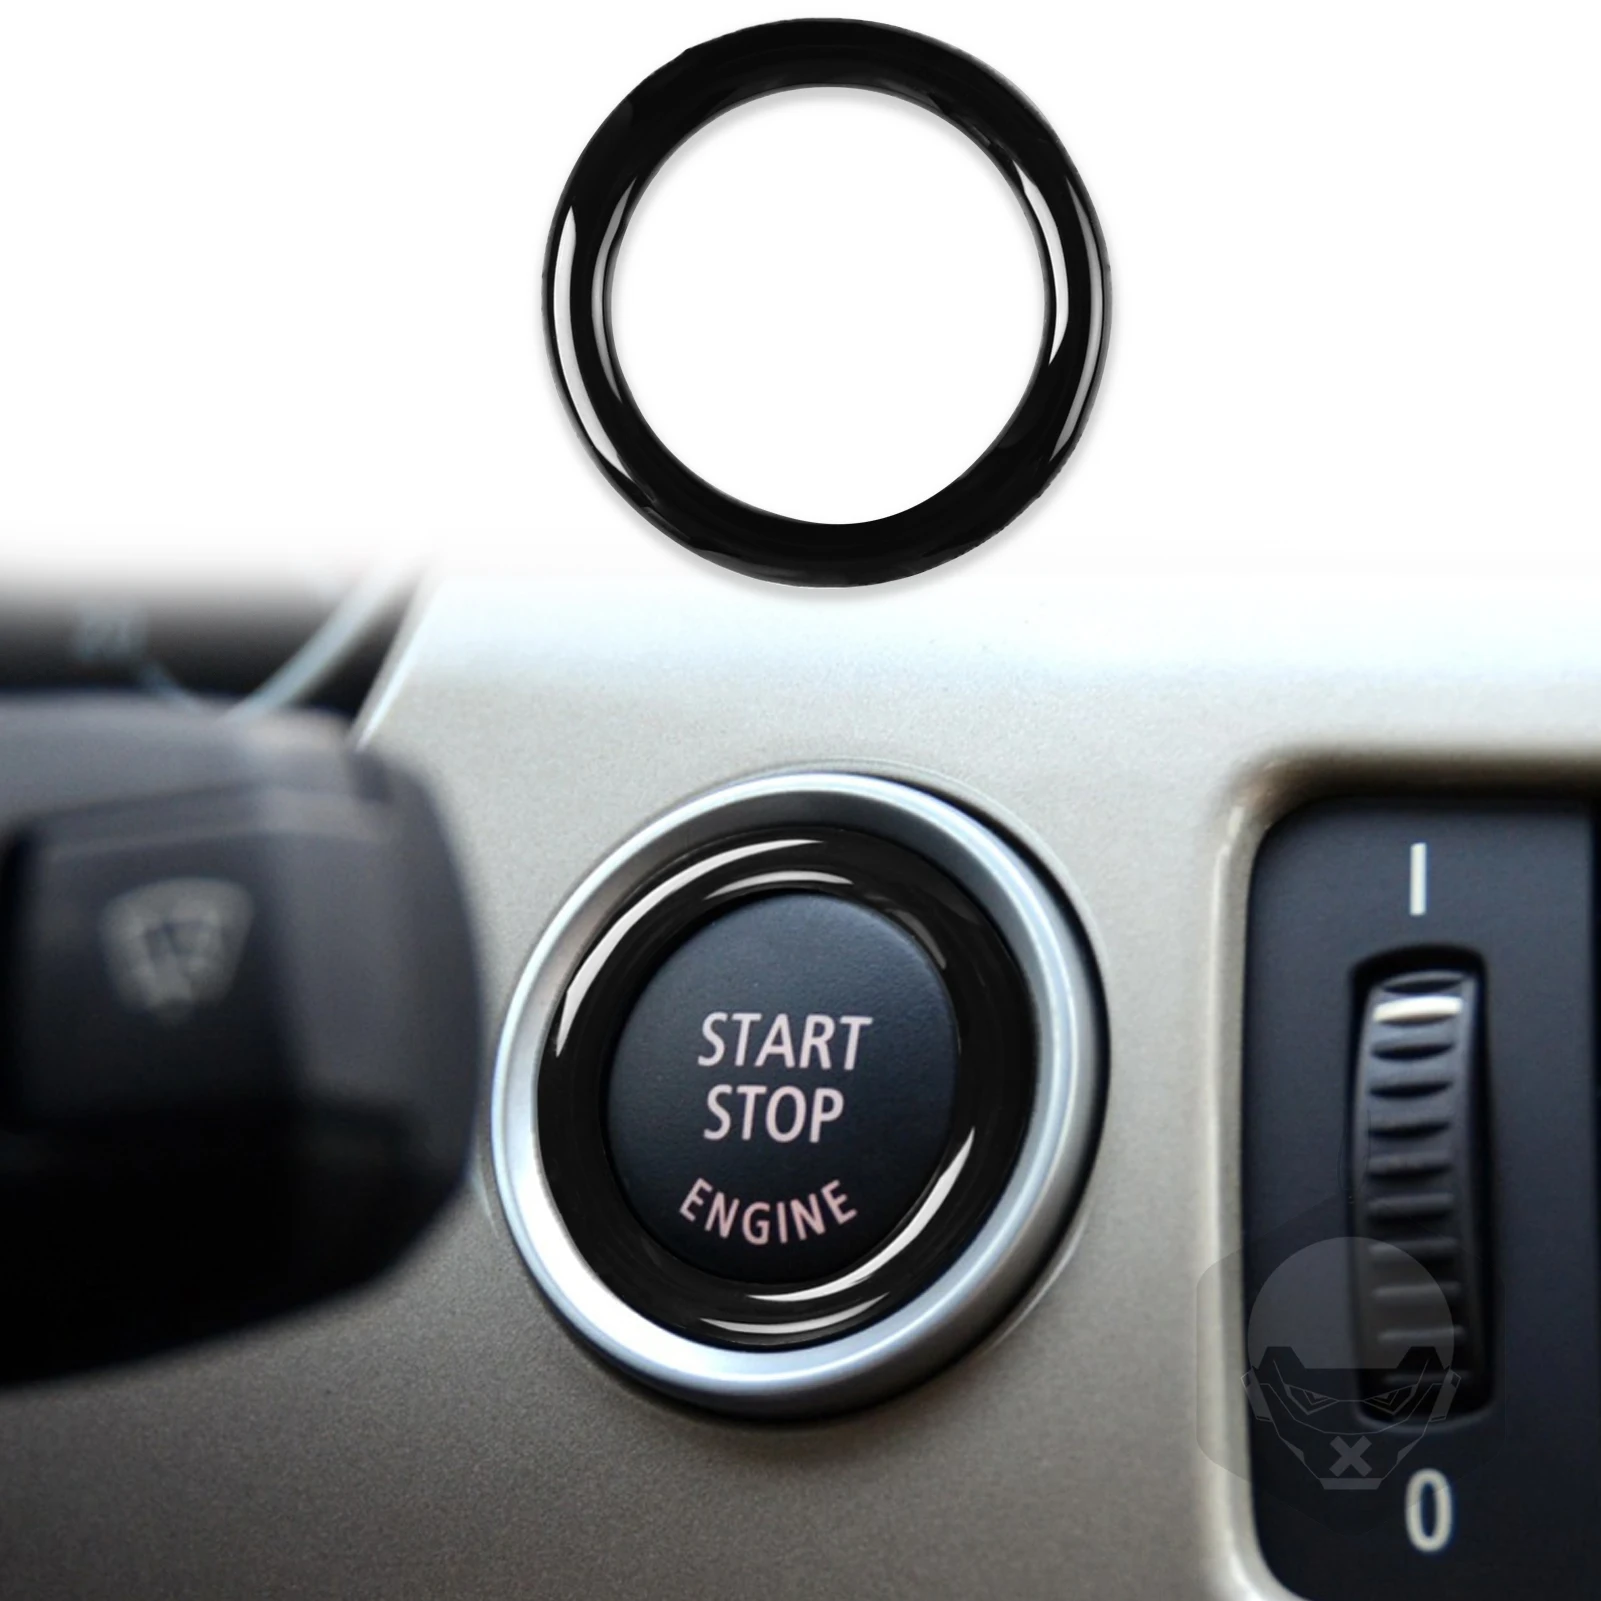 

Car Engine One Start Stop Push Button Ignition Key Circle Sticker Trim Decal For BMW 3 Series E90 E92 E93 320i Z4 E89 2009-2012